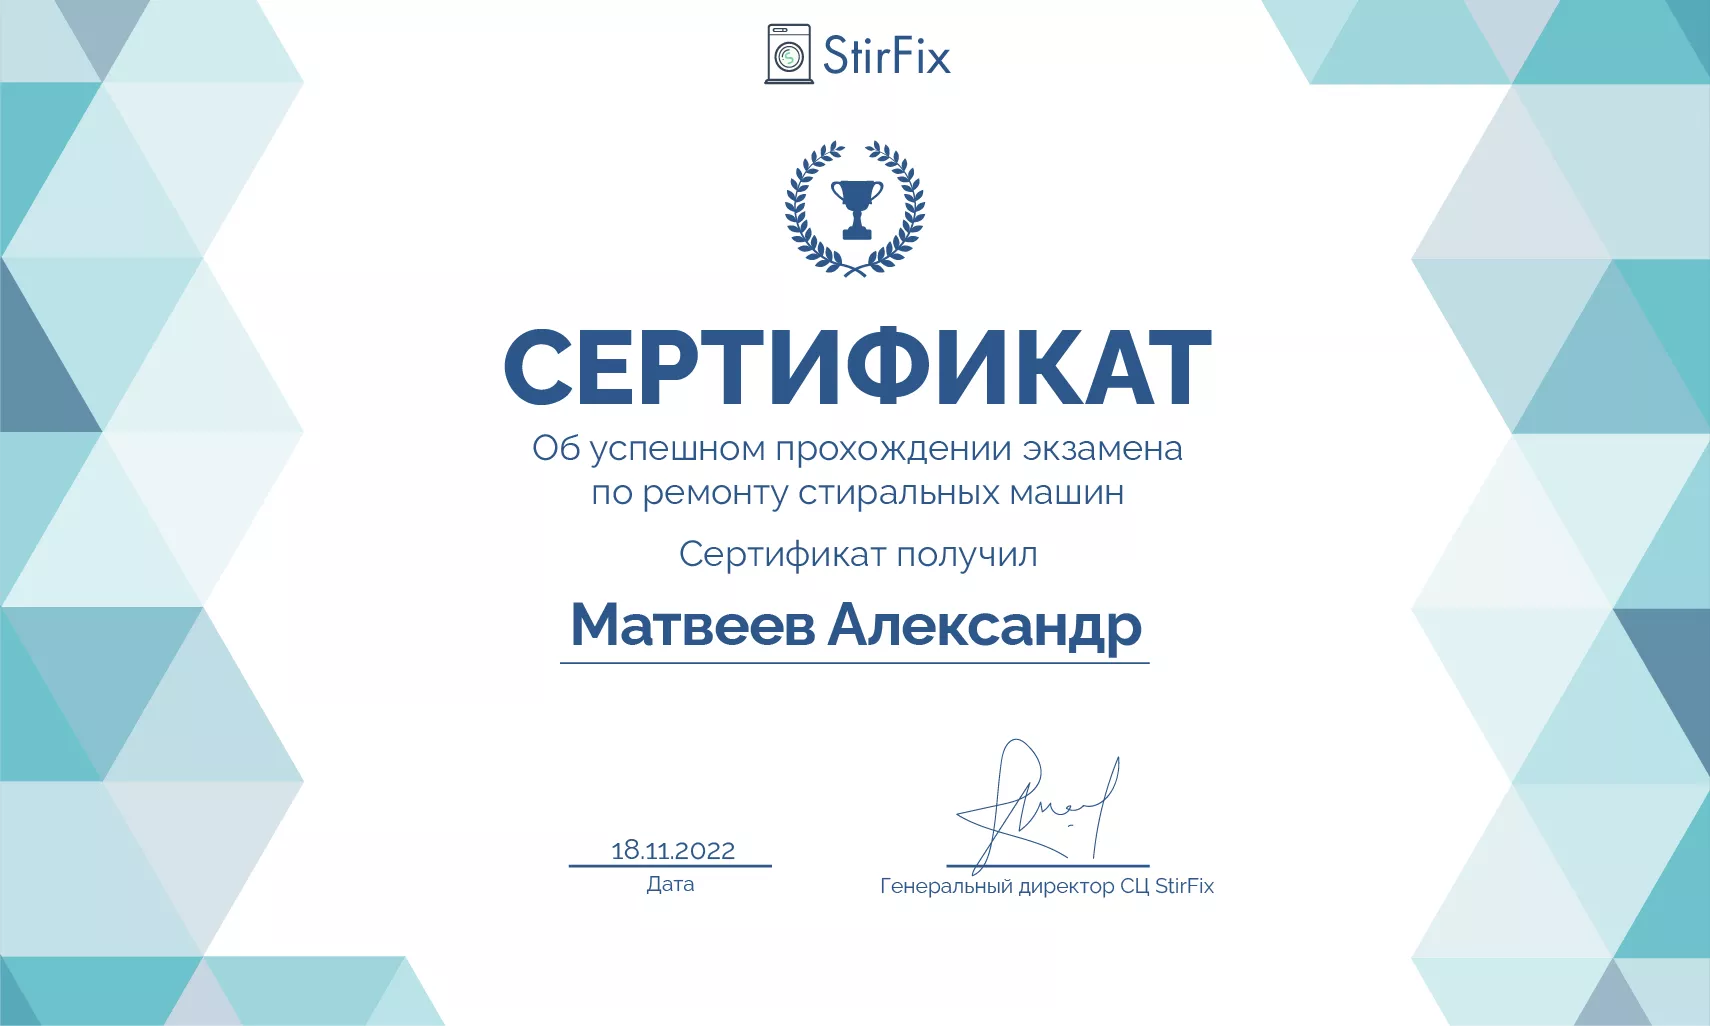 Матвеев Александр сертификат мастера по ремонту стиральных машин